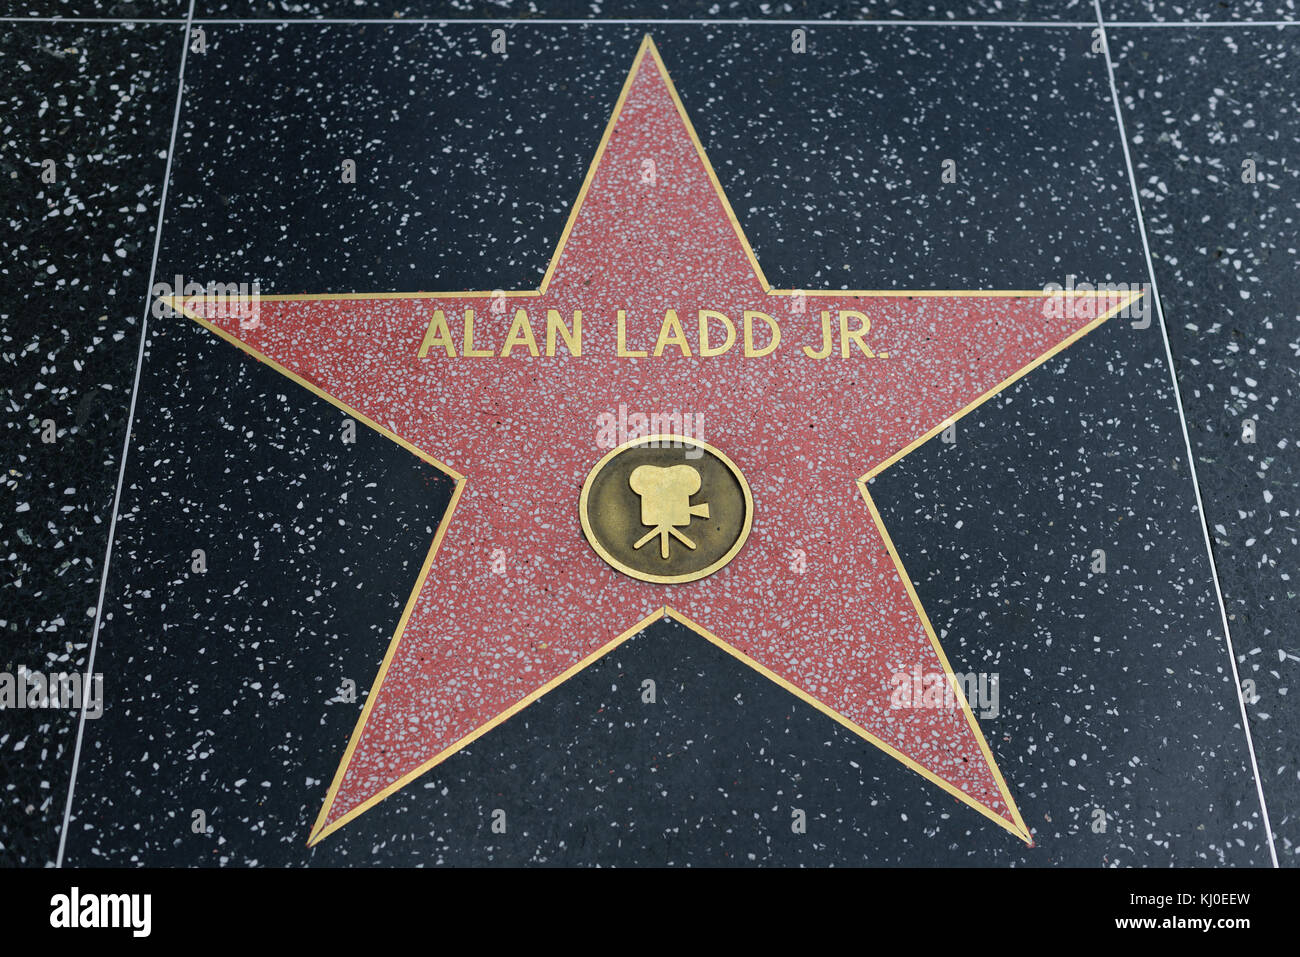 HOLLYWOOD, CA - DÉCEMBRE 06 : Alan Ladd Jr. Star sur le Hollywood Walk of Fame à Hollywood, Californie, le 6 décembre 2016. Banque D'Images